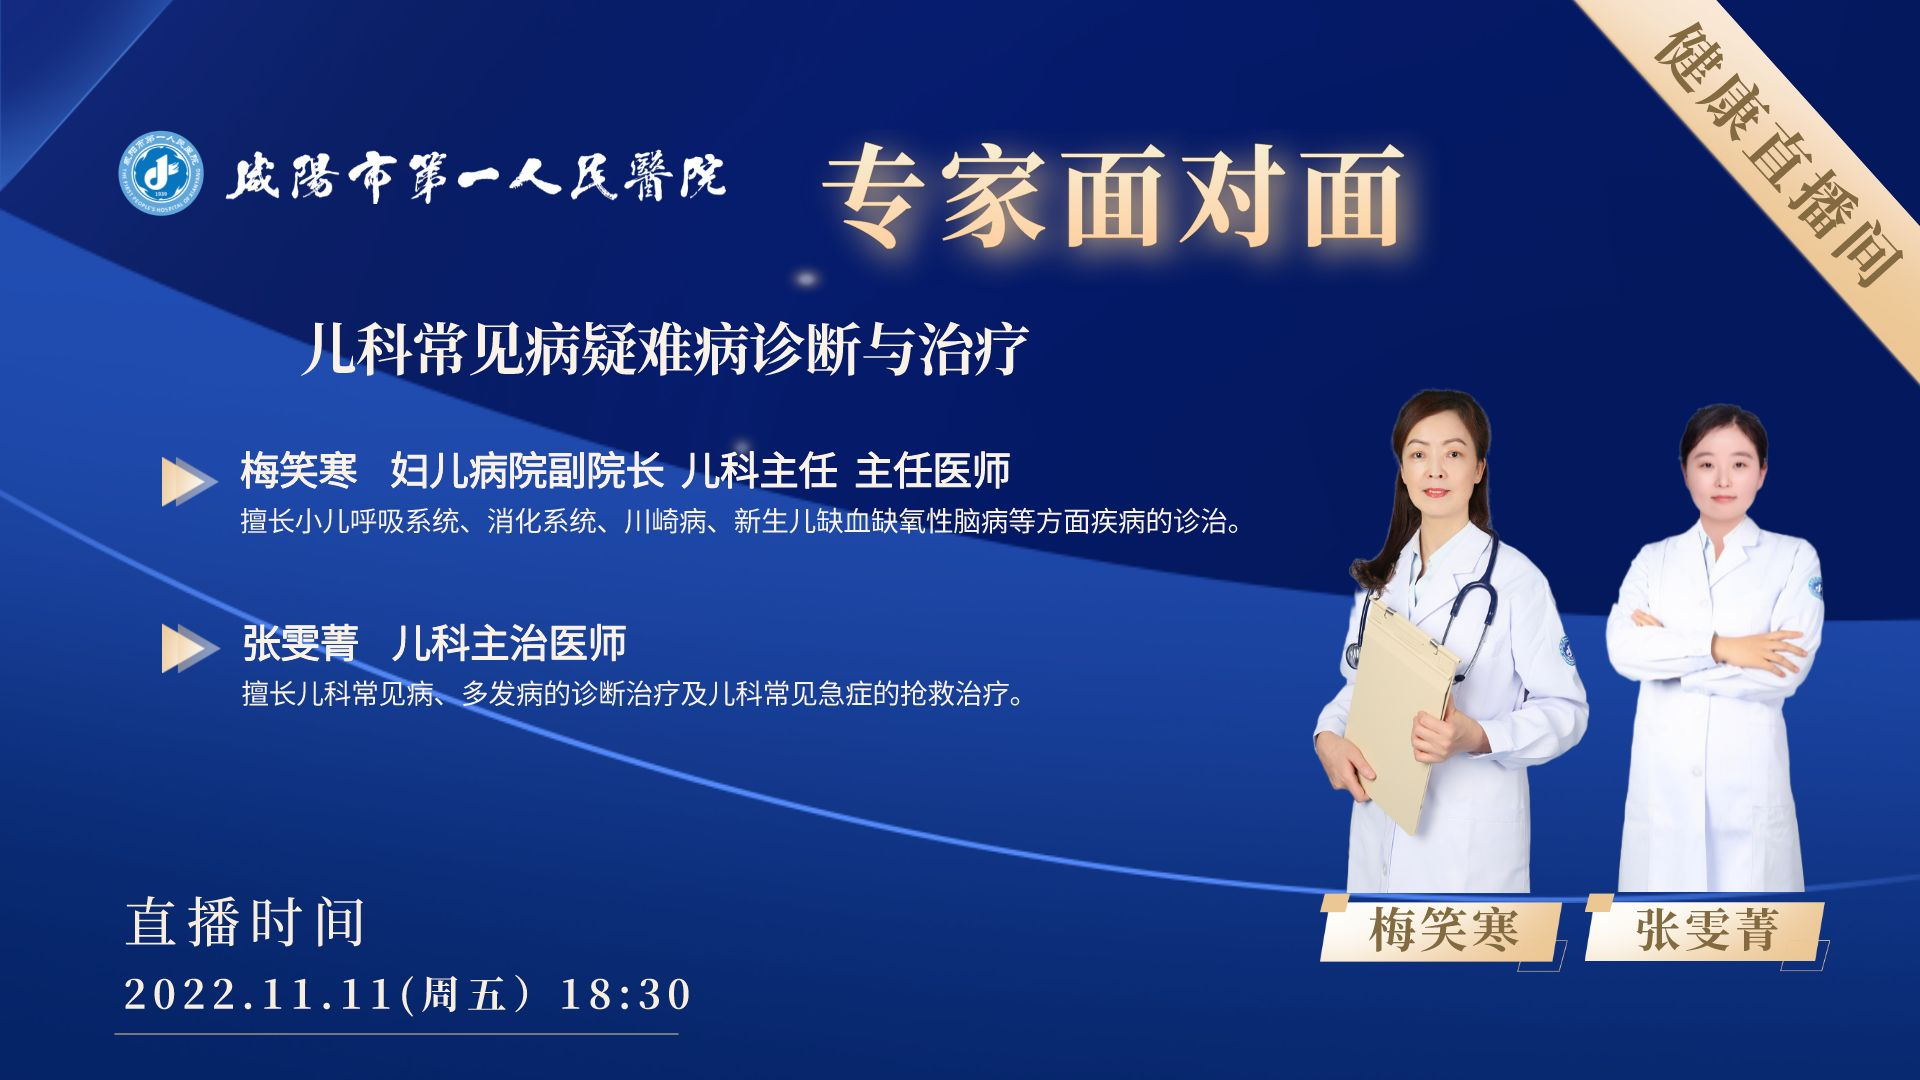 【直播回看】咸阳市第一人民医院儿科常见病疑难病诊断与治疗